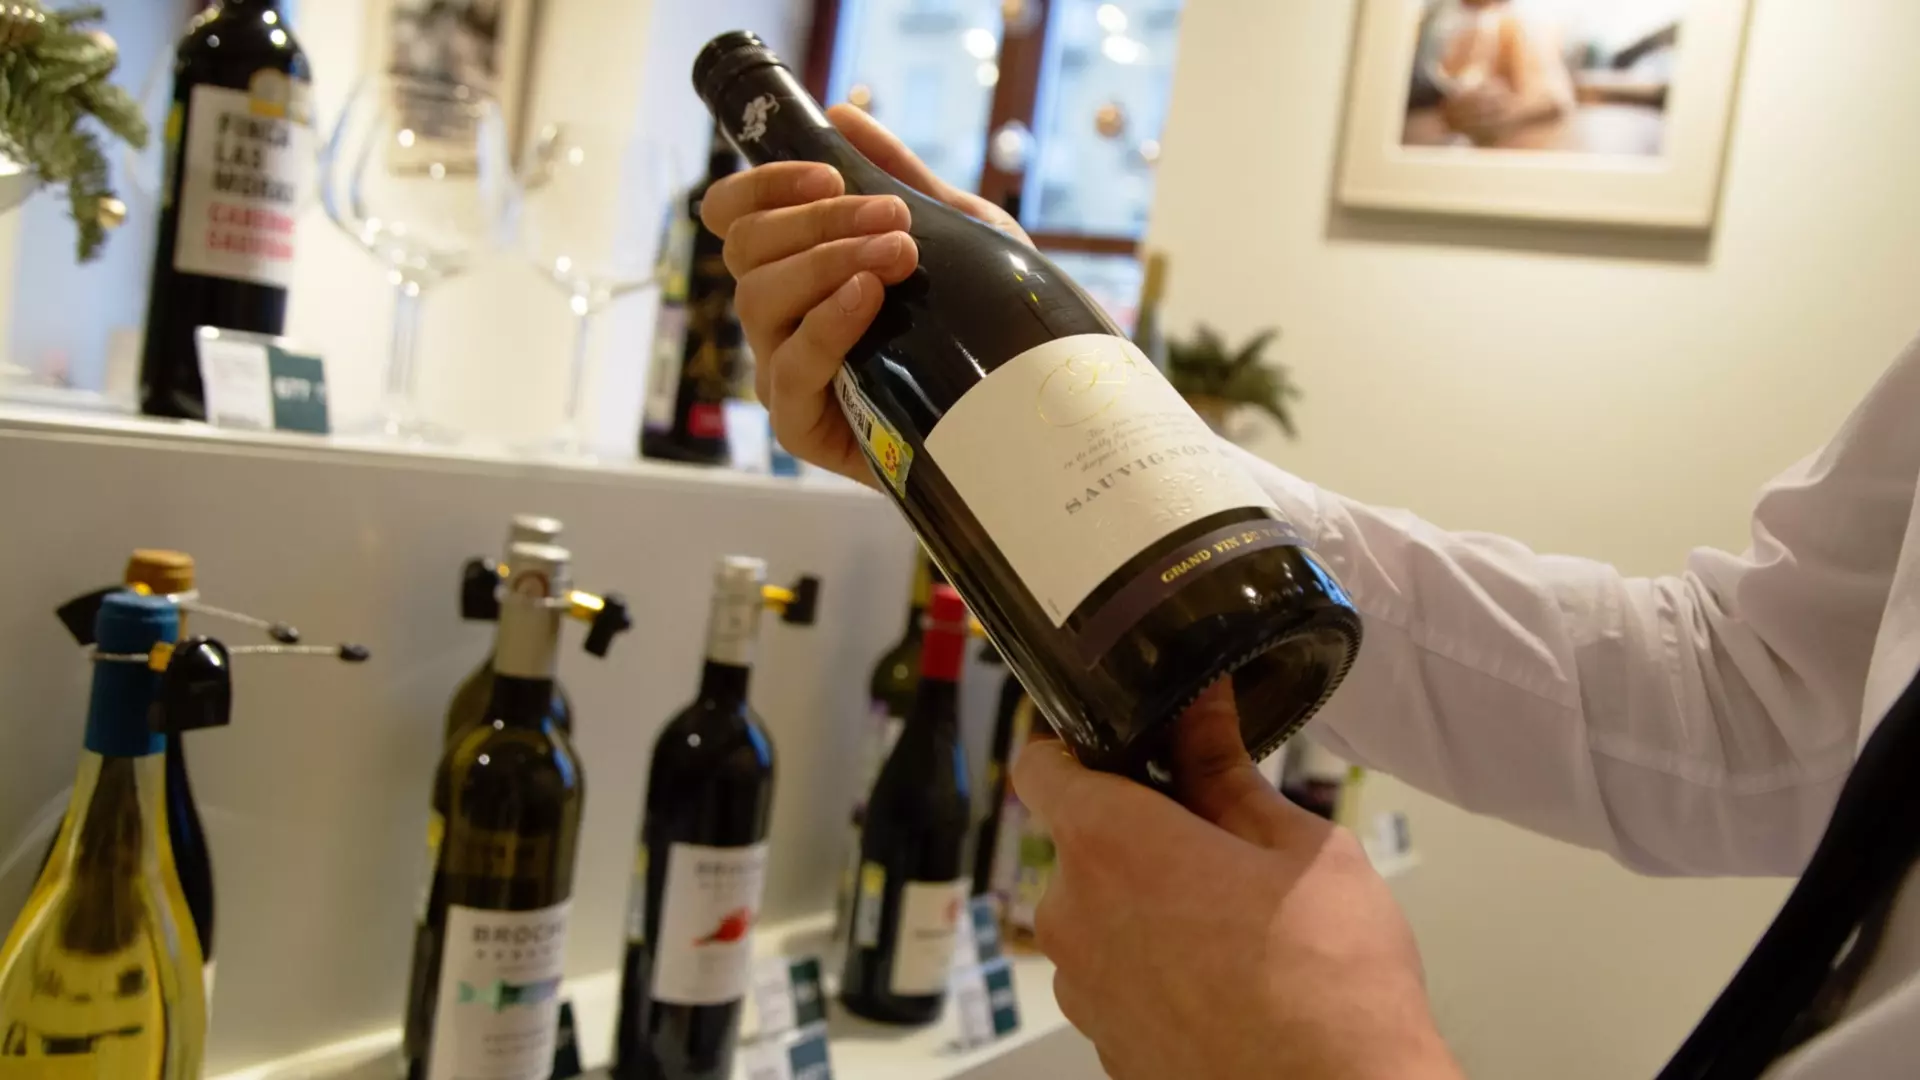 Ученые доказали: гости выпьют больше, если подавать вино в бокалах по 250 млн